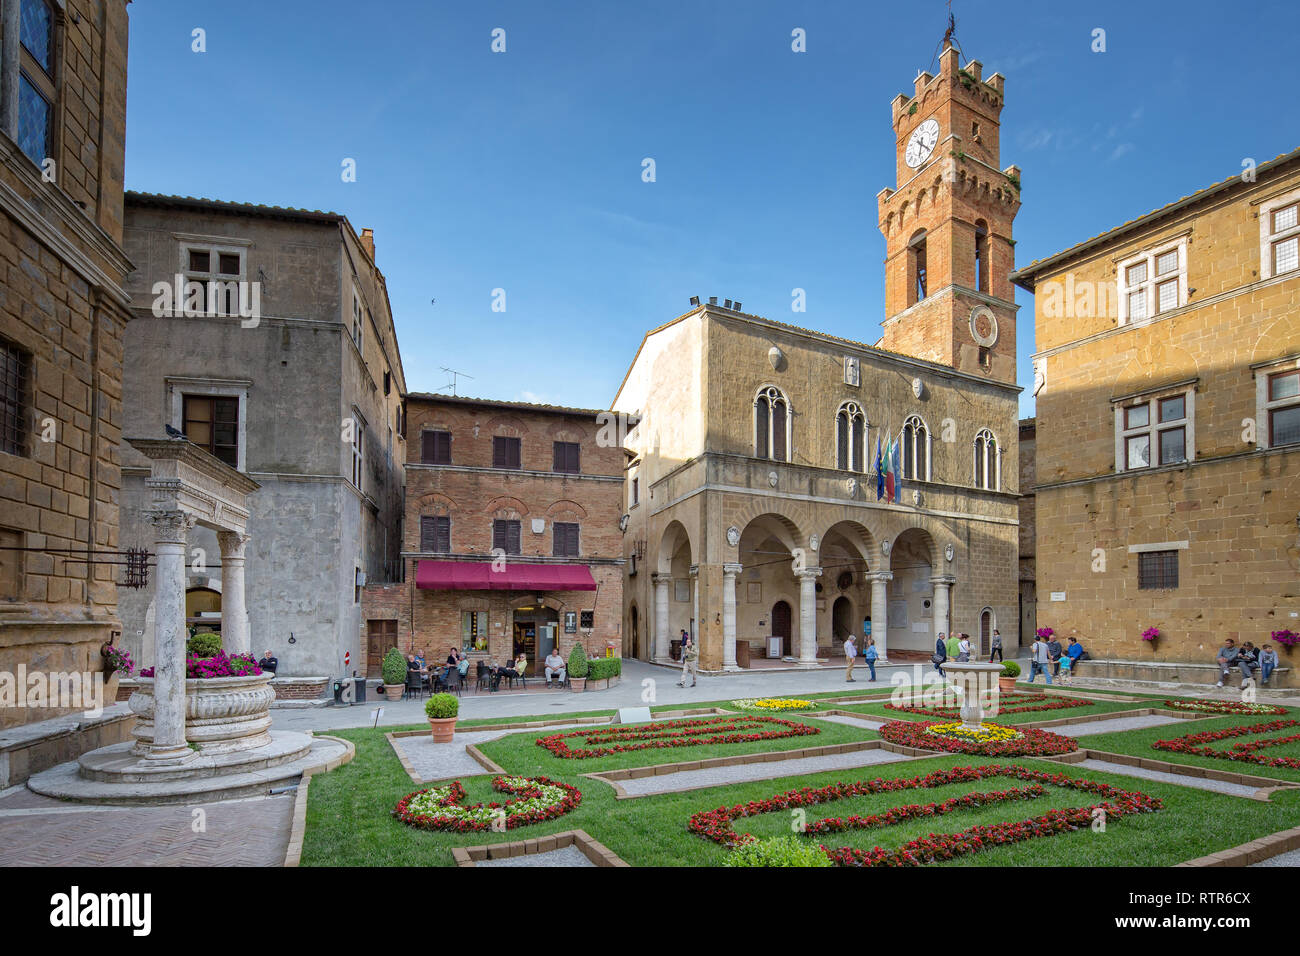 Pienza, Toscana/Italia - 10 de mayo de 2016: Piazza Pio II., idílica plaza con una fuente, ayuntamiento y una pequeña cafetería en Pienza. Foto de stock